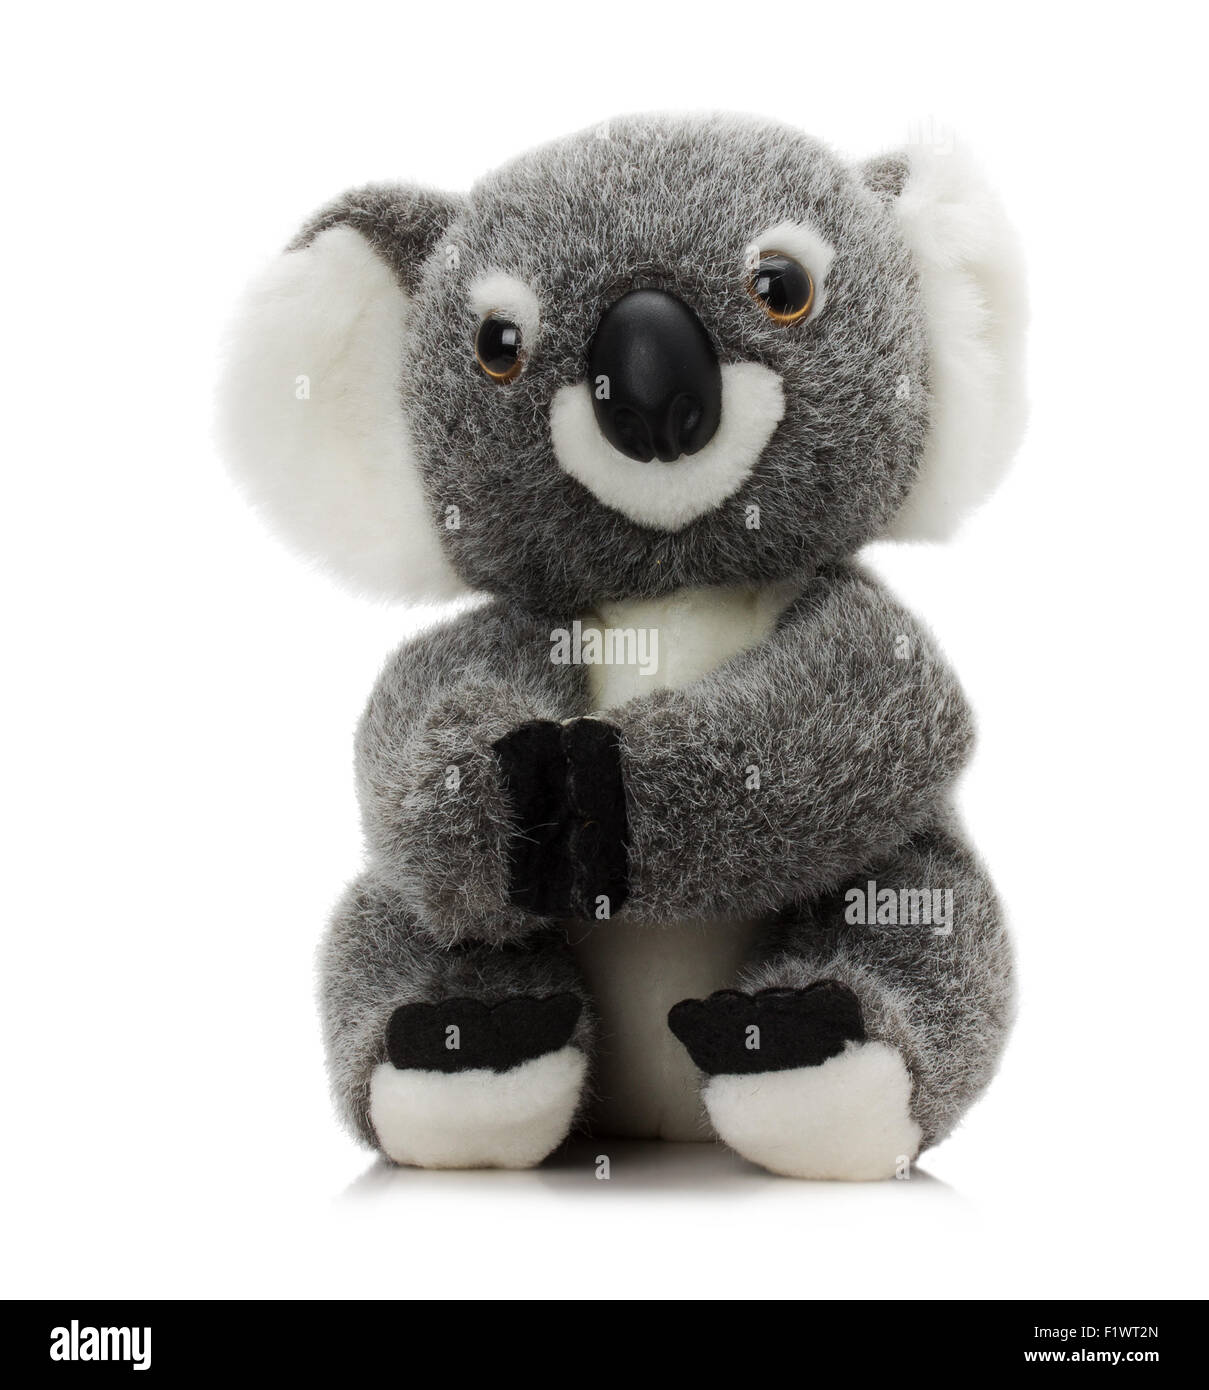 Peluche giocattolo koala isolato su uno sfondo bianco. Foto Stock